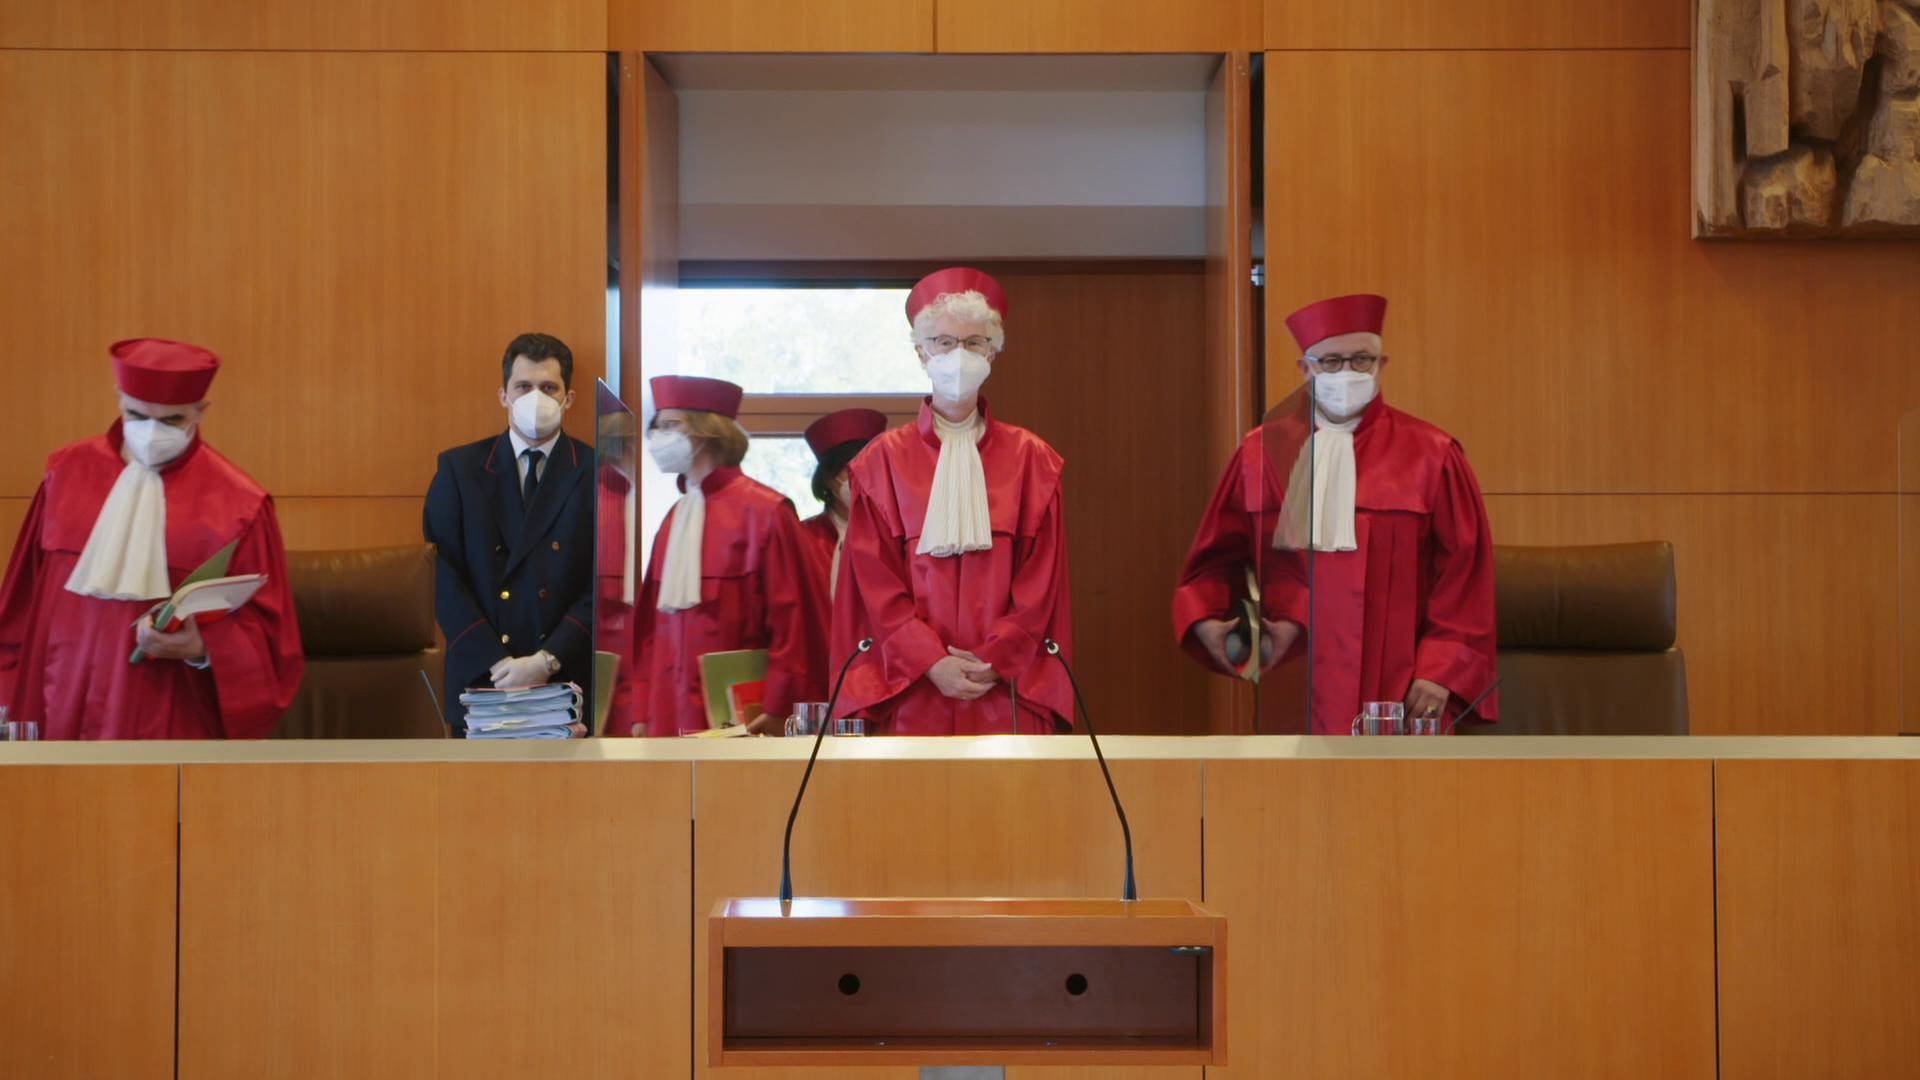 Die roten Roben · Das Bundesverfassungsgericht